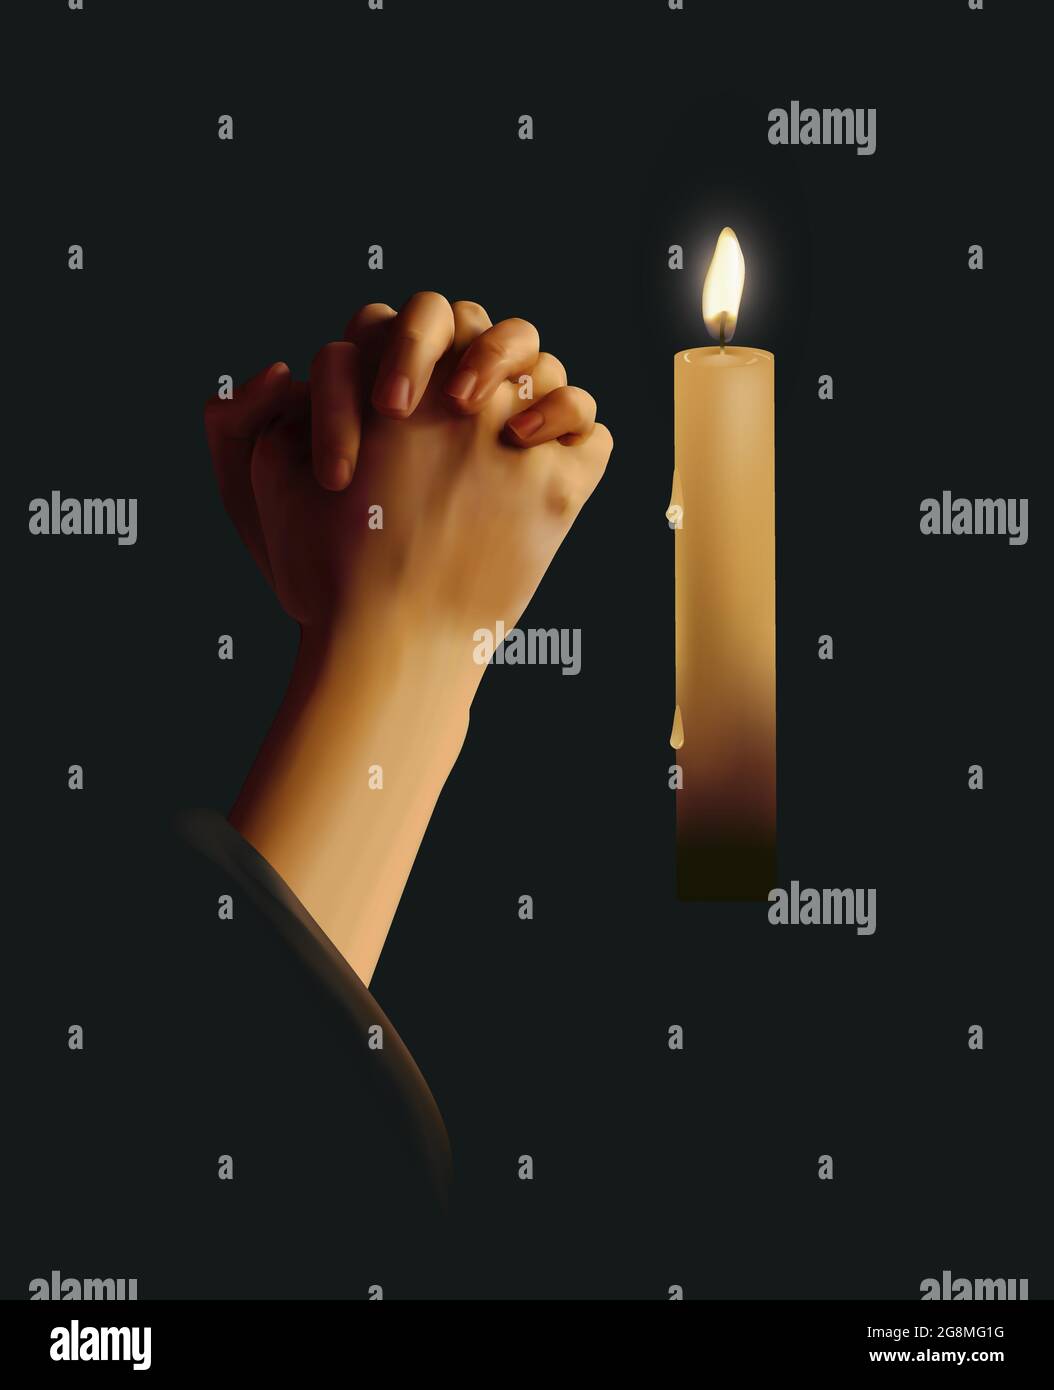 Realistische Vektordarstellung von gebetteten Händen mit angezündeten Kerzen vor dunklem Hintergrund Stock Vektor